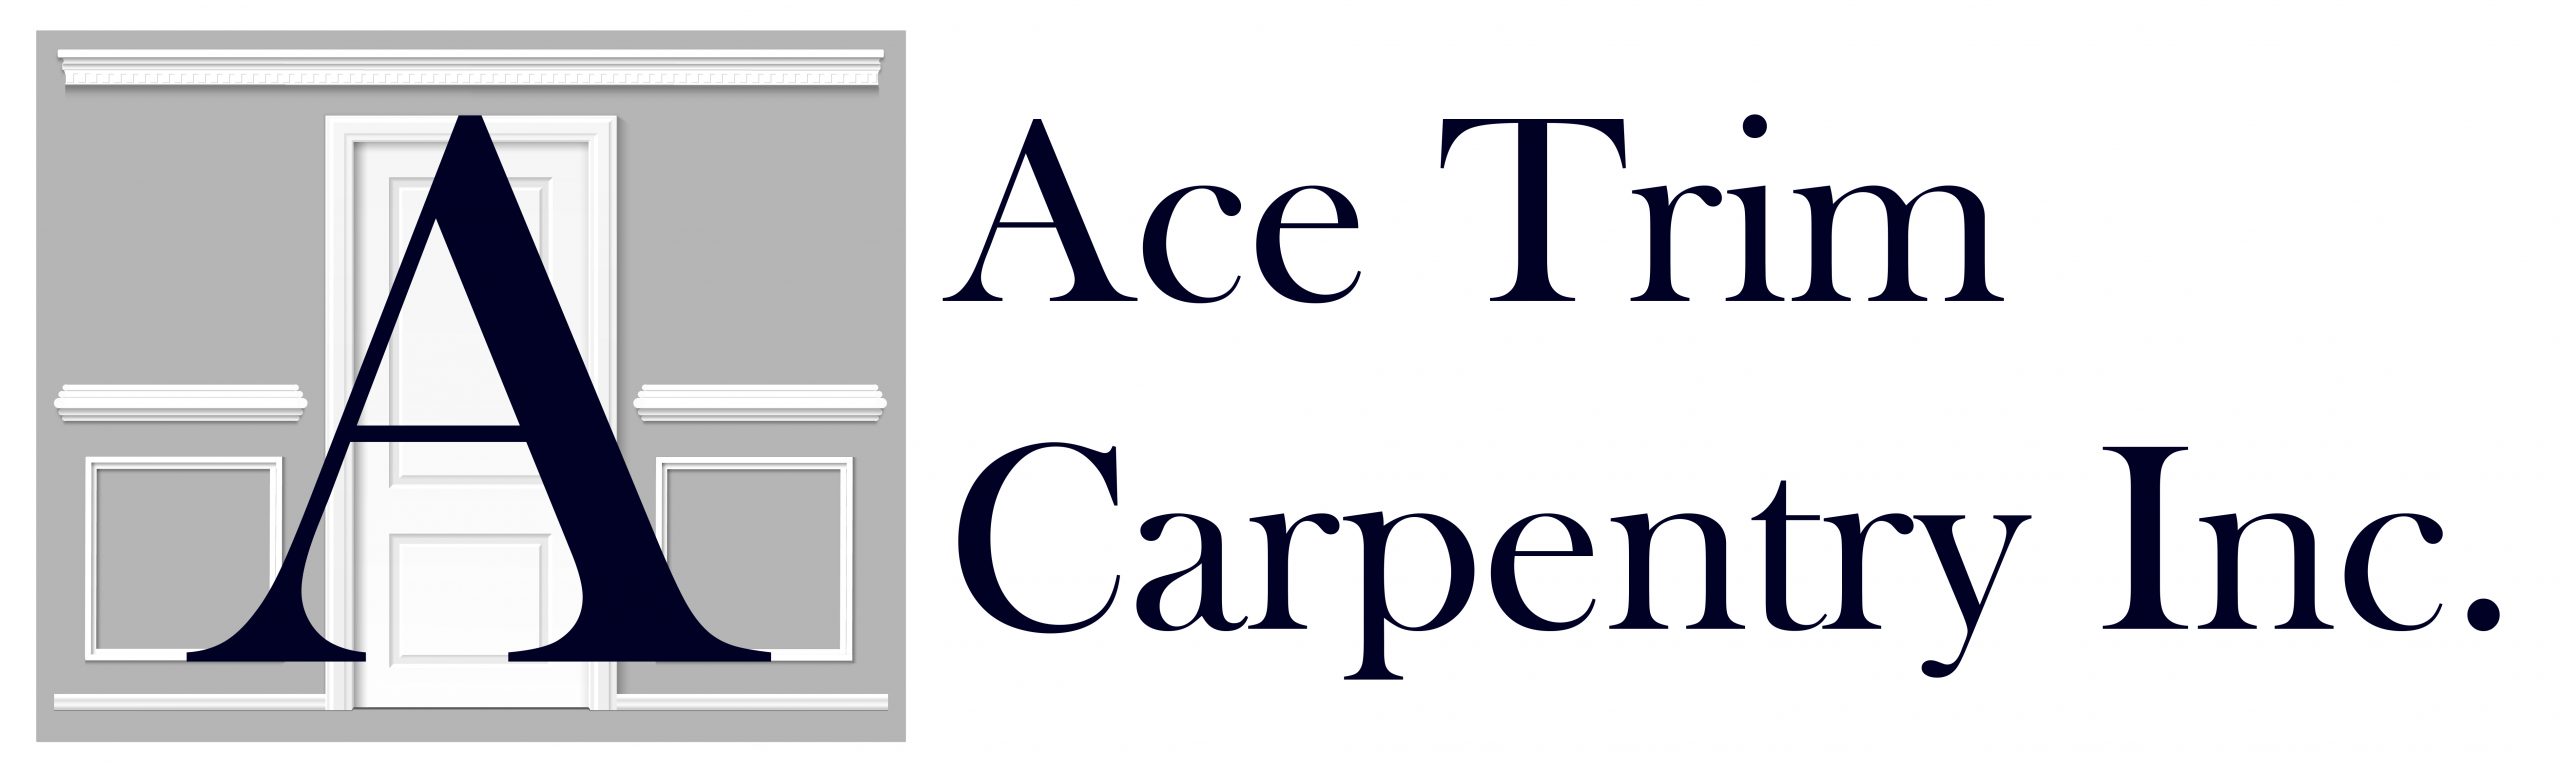 Ace Trim Carpentry Inc.